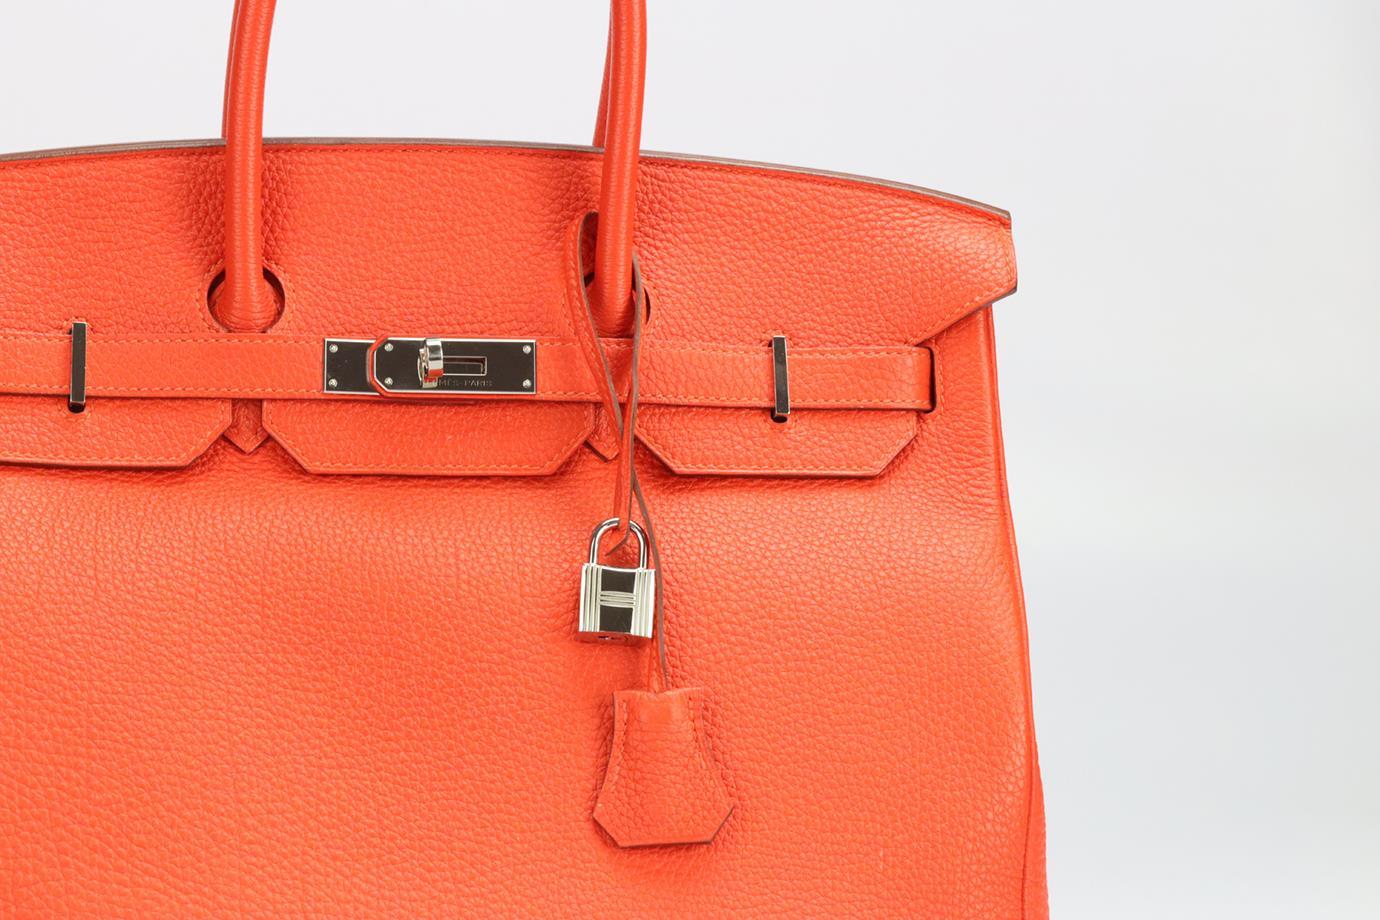 Red Hermès 2013 Birkin 35cm Togo Leather Bag For Sale